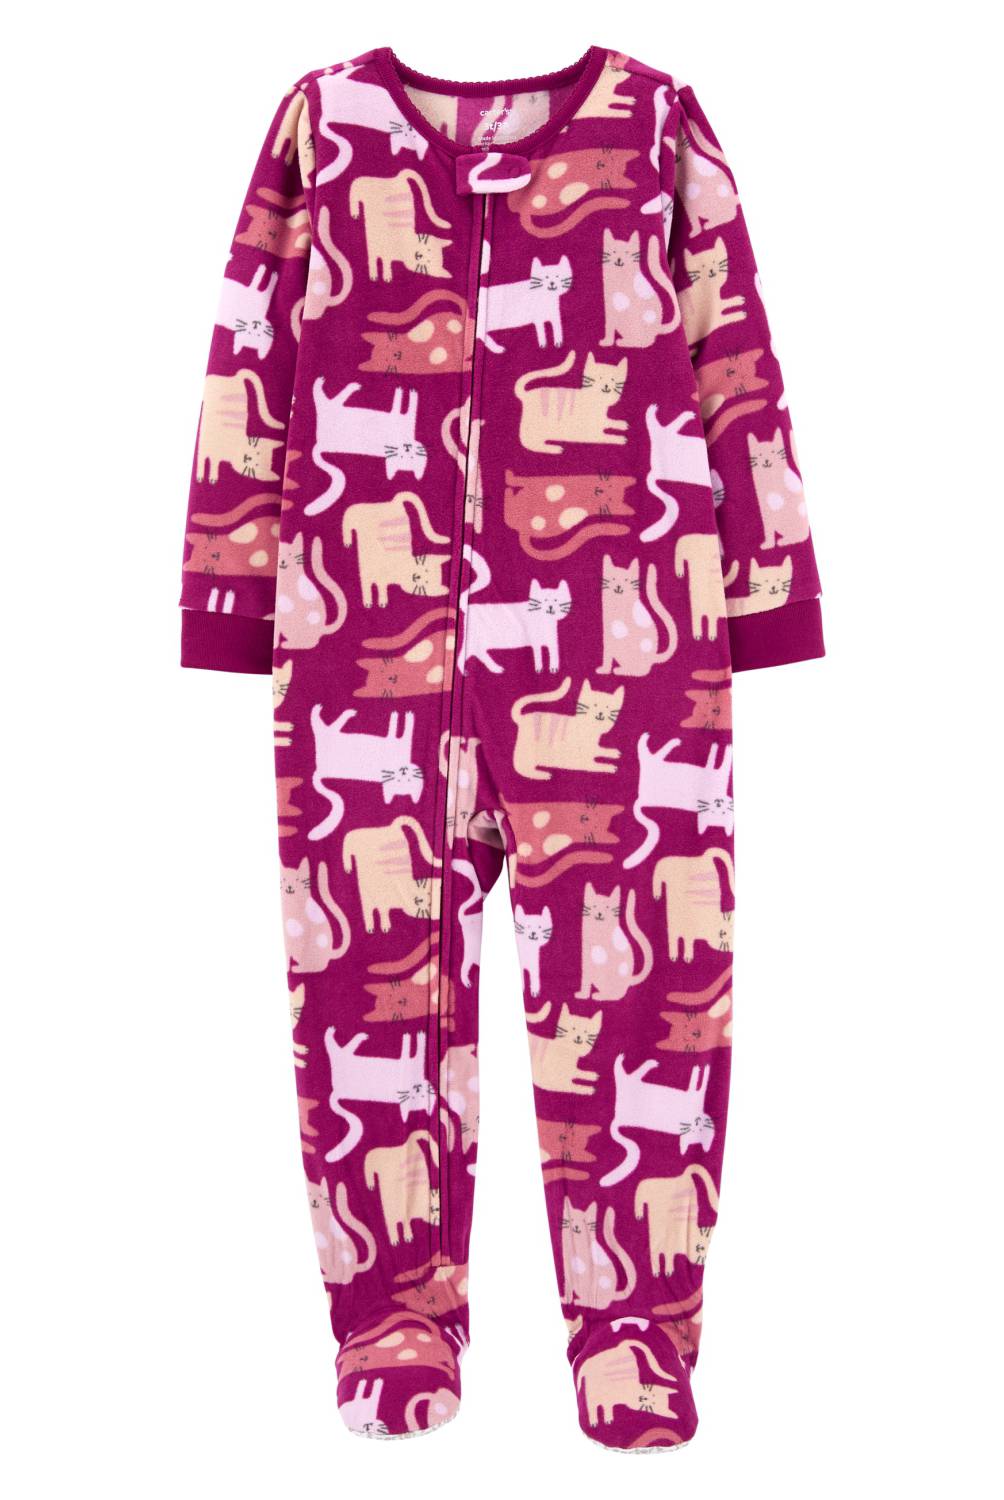 CARTER'S - Pijama Polar Gatos  Niña